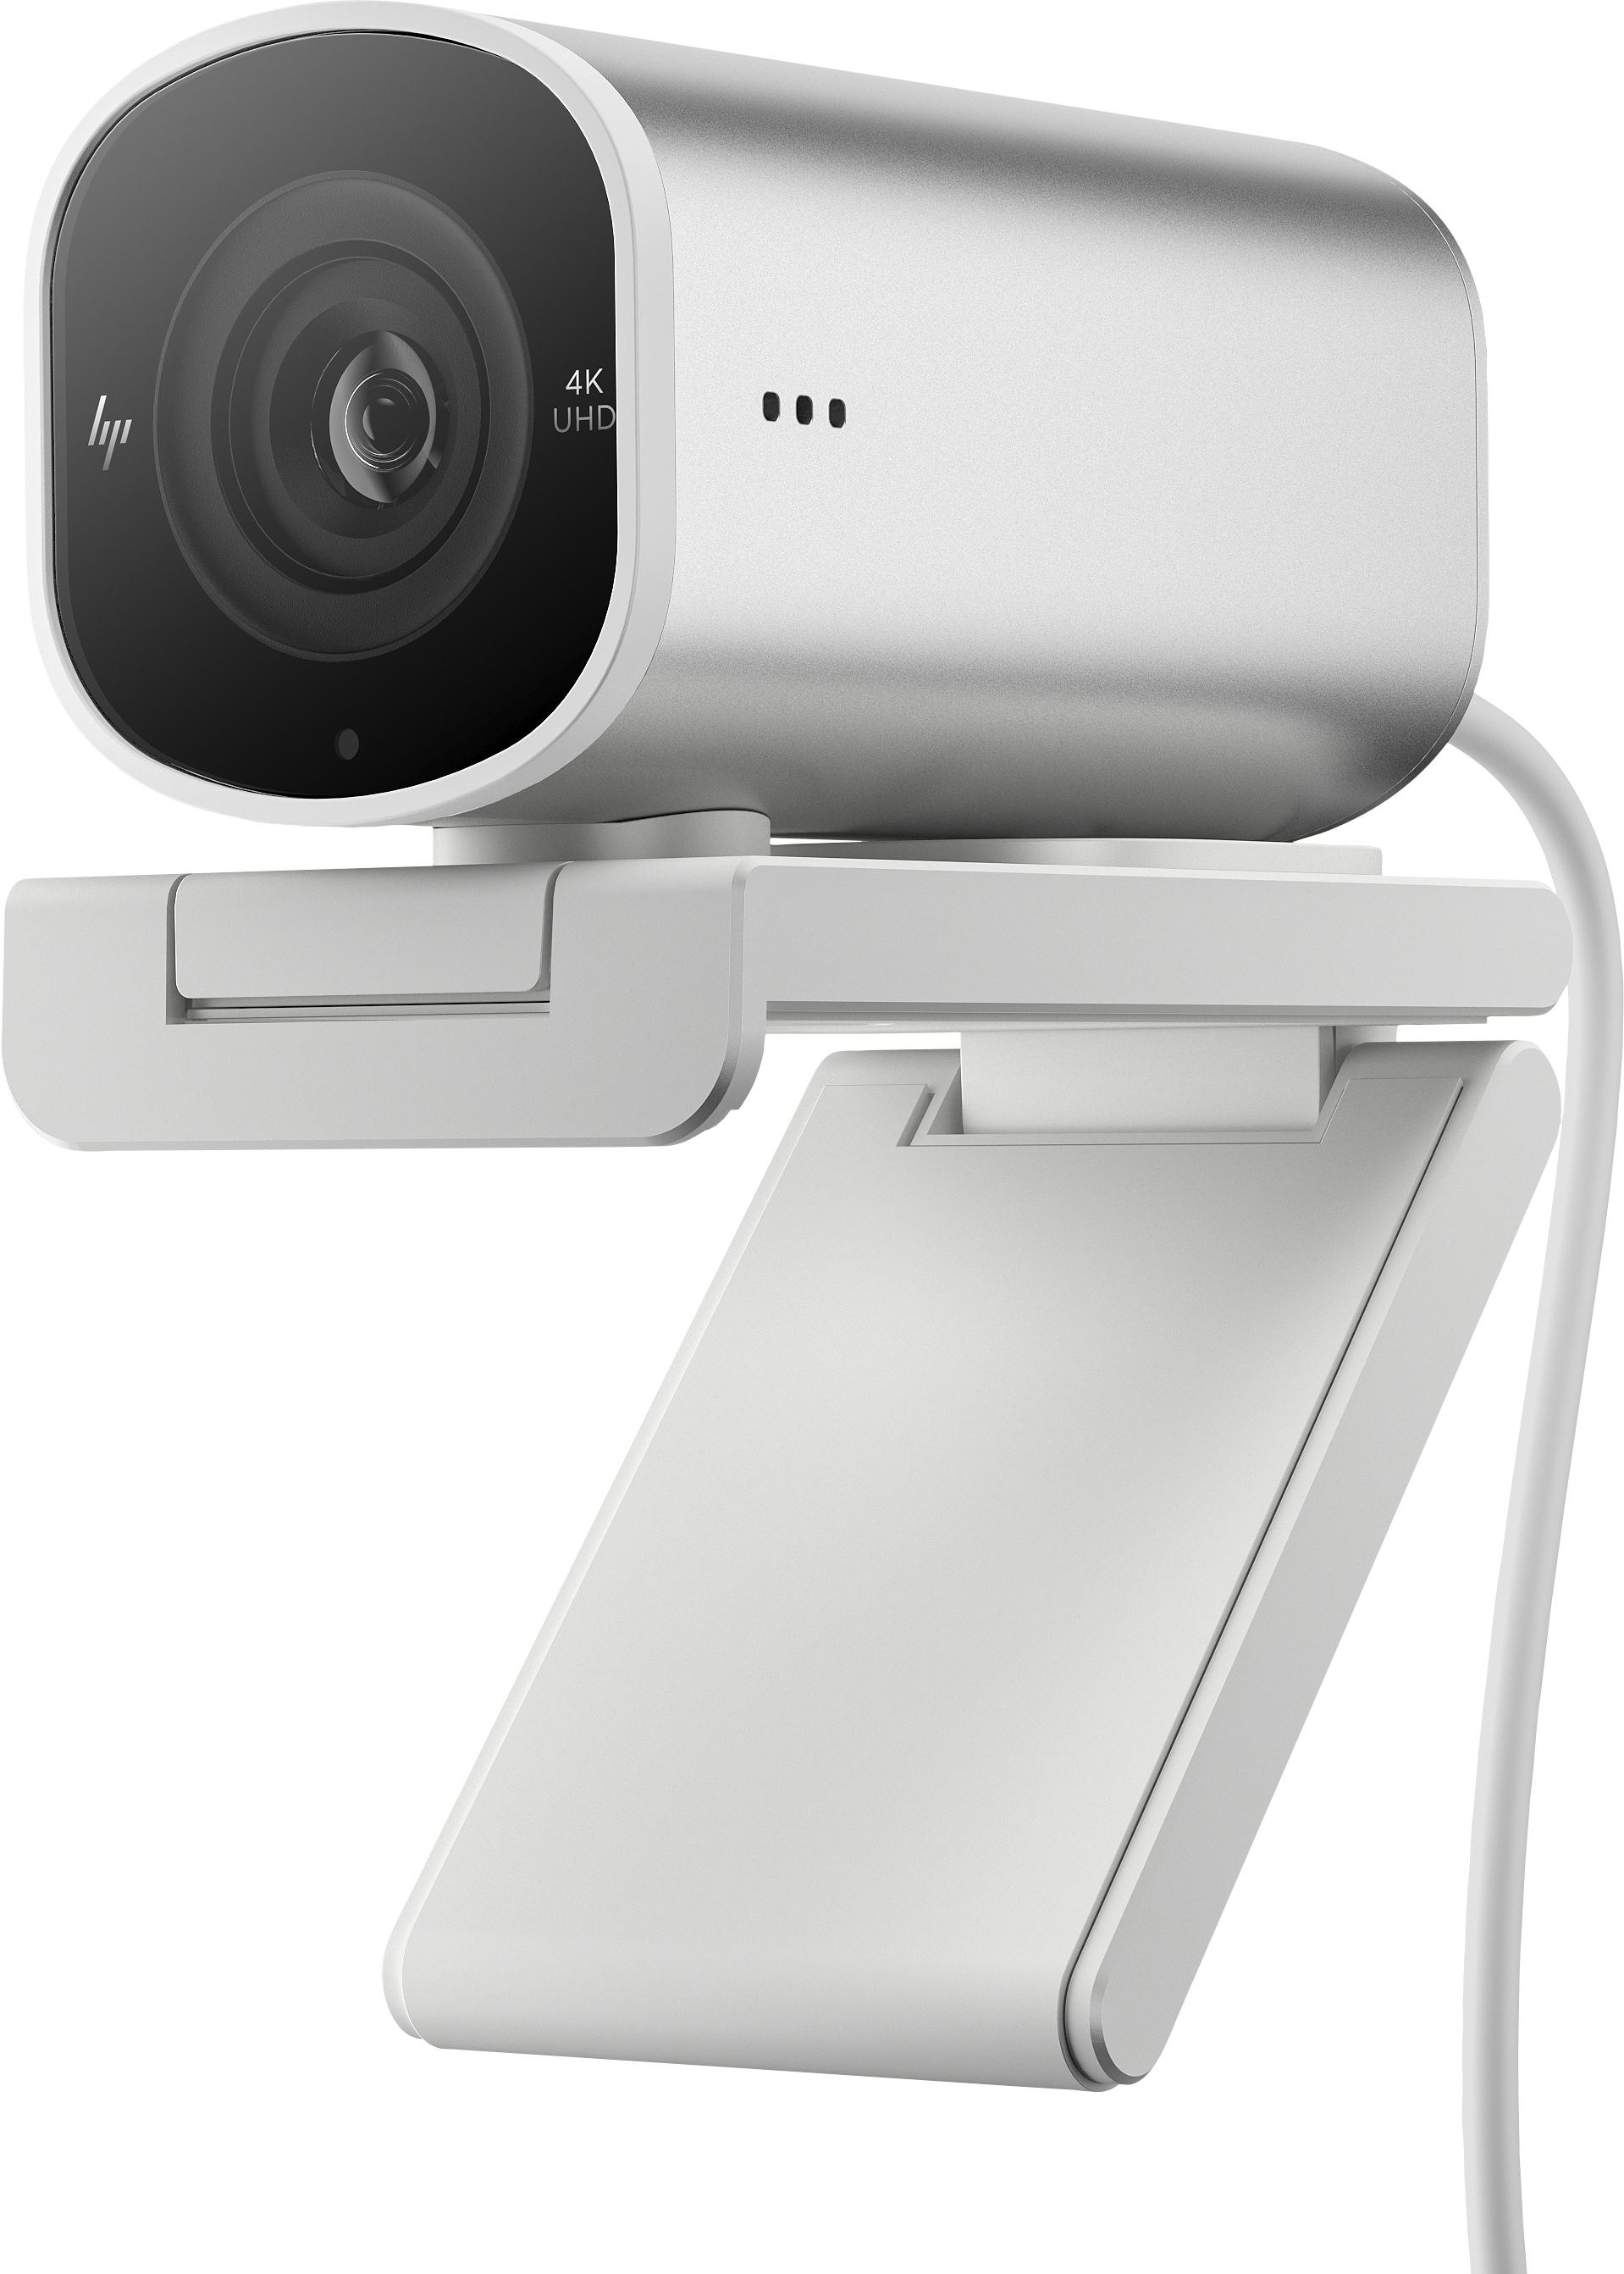 HP 4K Webcam 960 Streaming